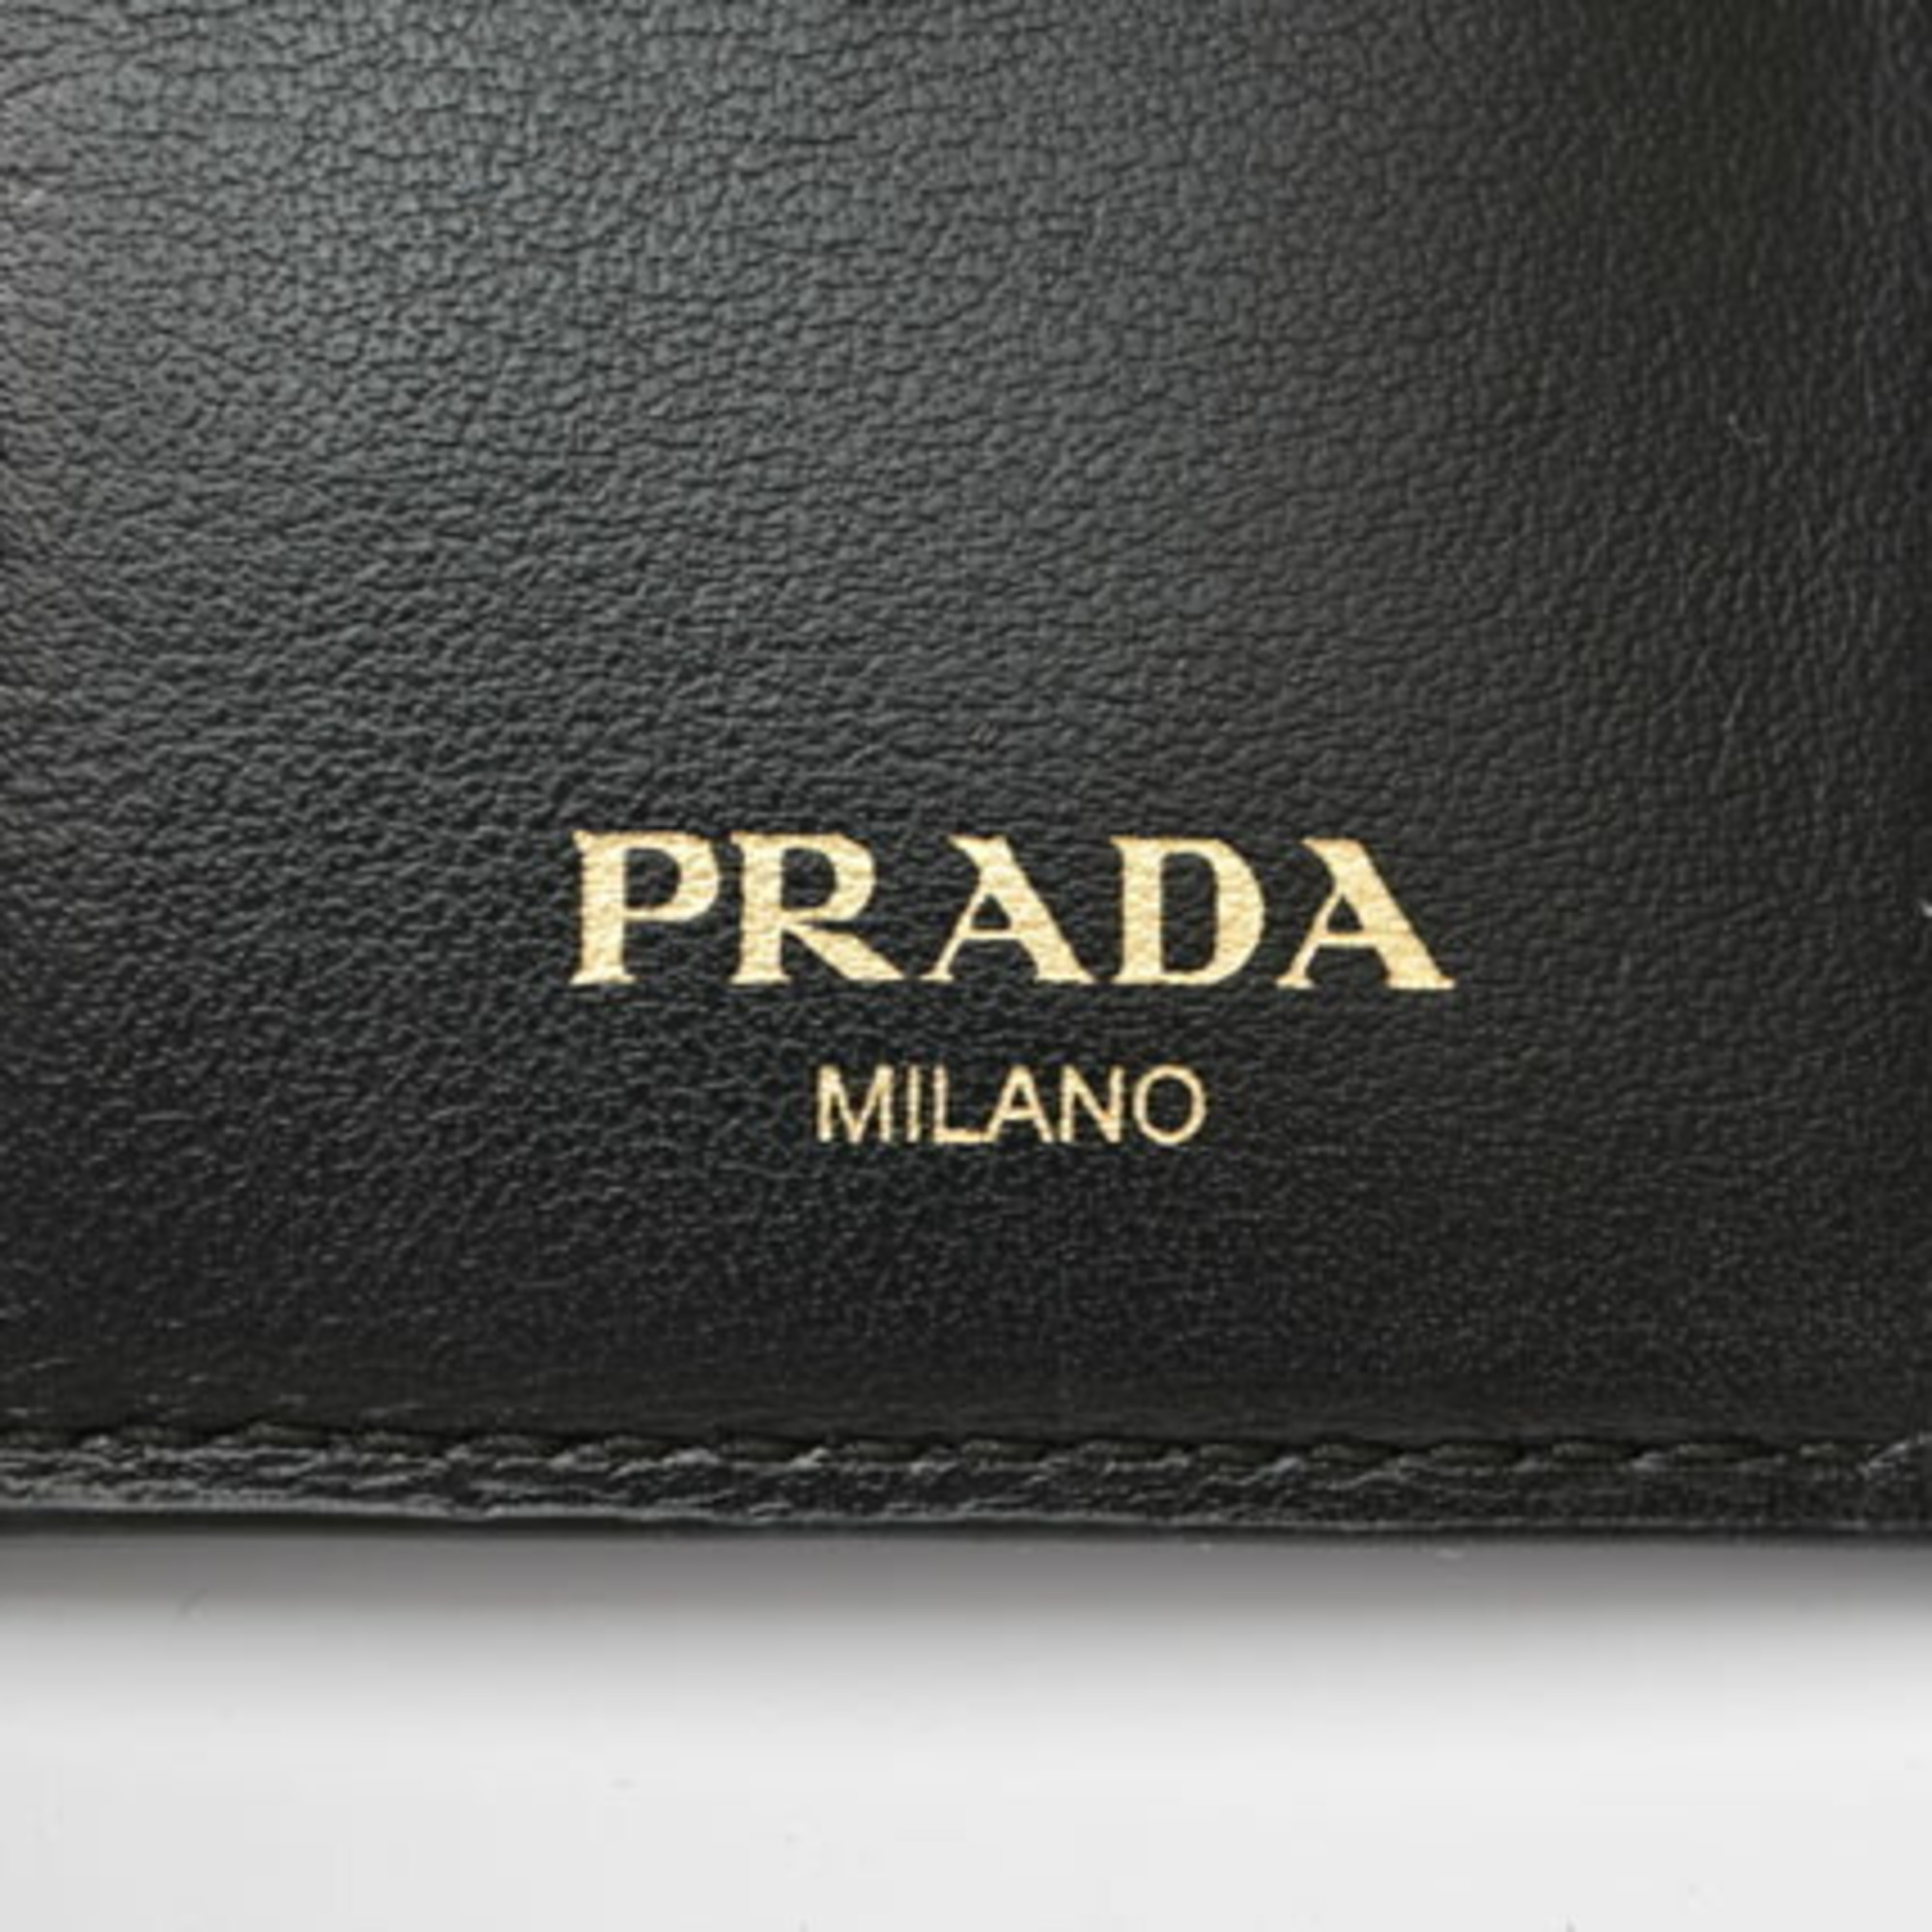 PRADA Coin Case Card VITELLO MOVE Leather NERO Black